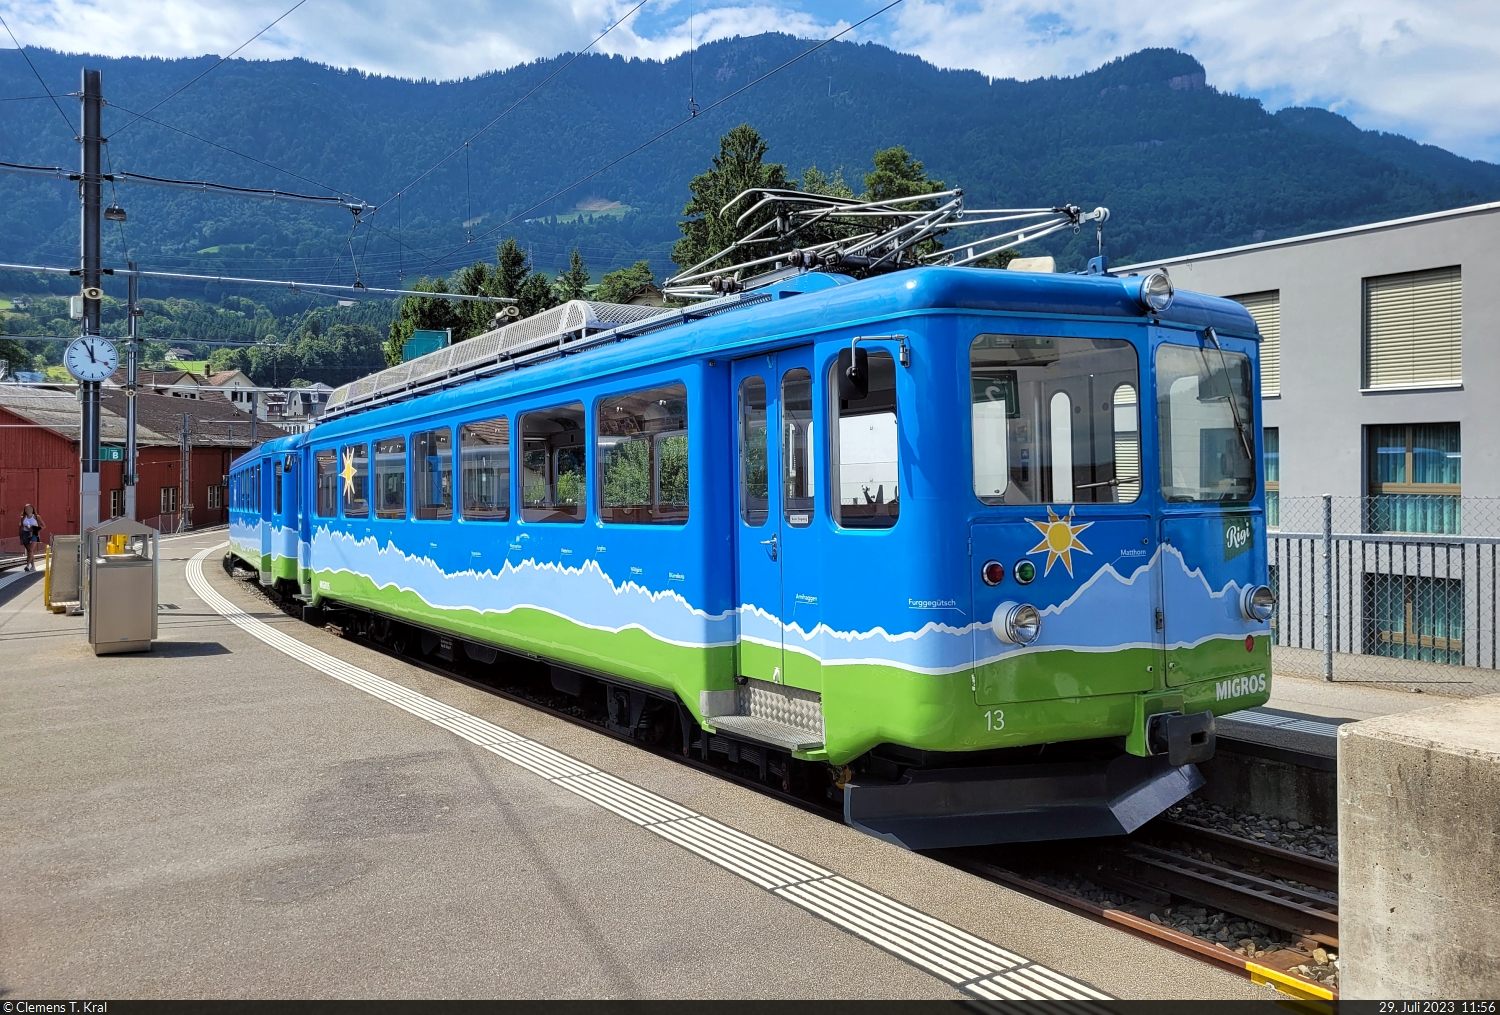 Abgebügelt steht der Triebwagen BDhe 2/4 13 mit dem Steuerwagen Bt 23 im Zahnrad-Bahnhof Arth-Goldau RB (CH). Diese Einheit wirbt für die Schweizer Supermarkt-Kette Migros.

🧰 Rigi Bahnen AG
🕓 29.7.2023 | 11:56 Uhr